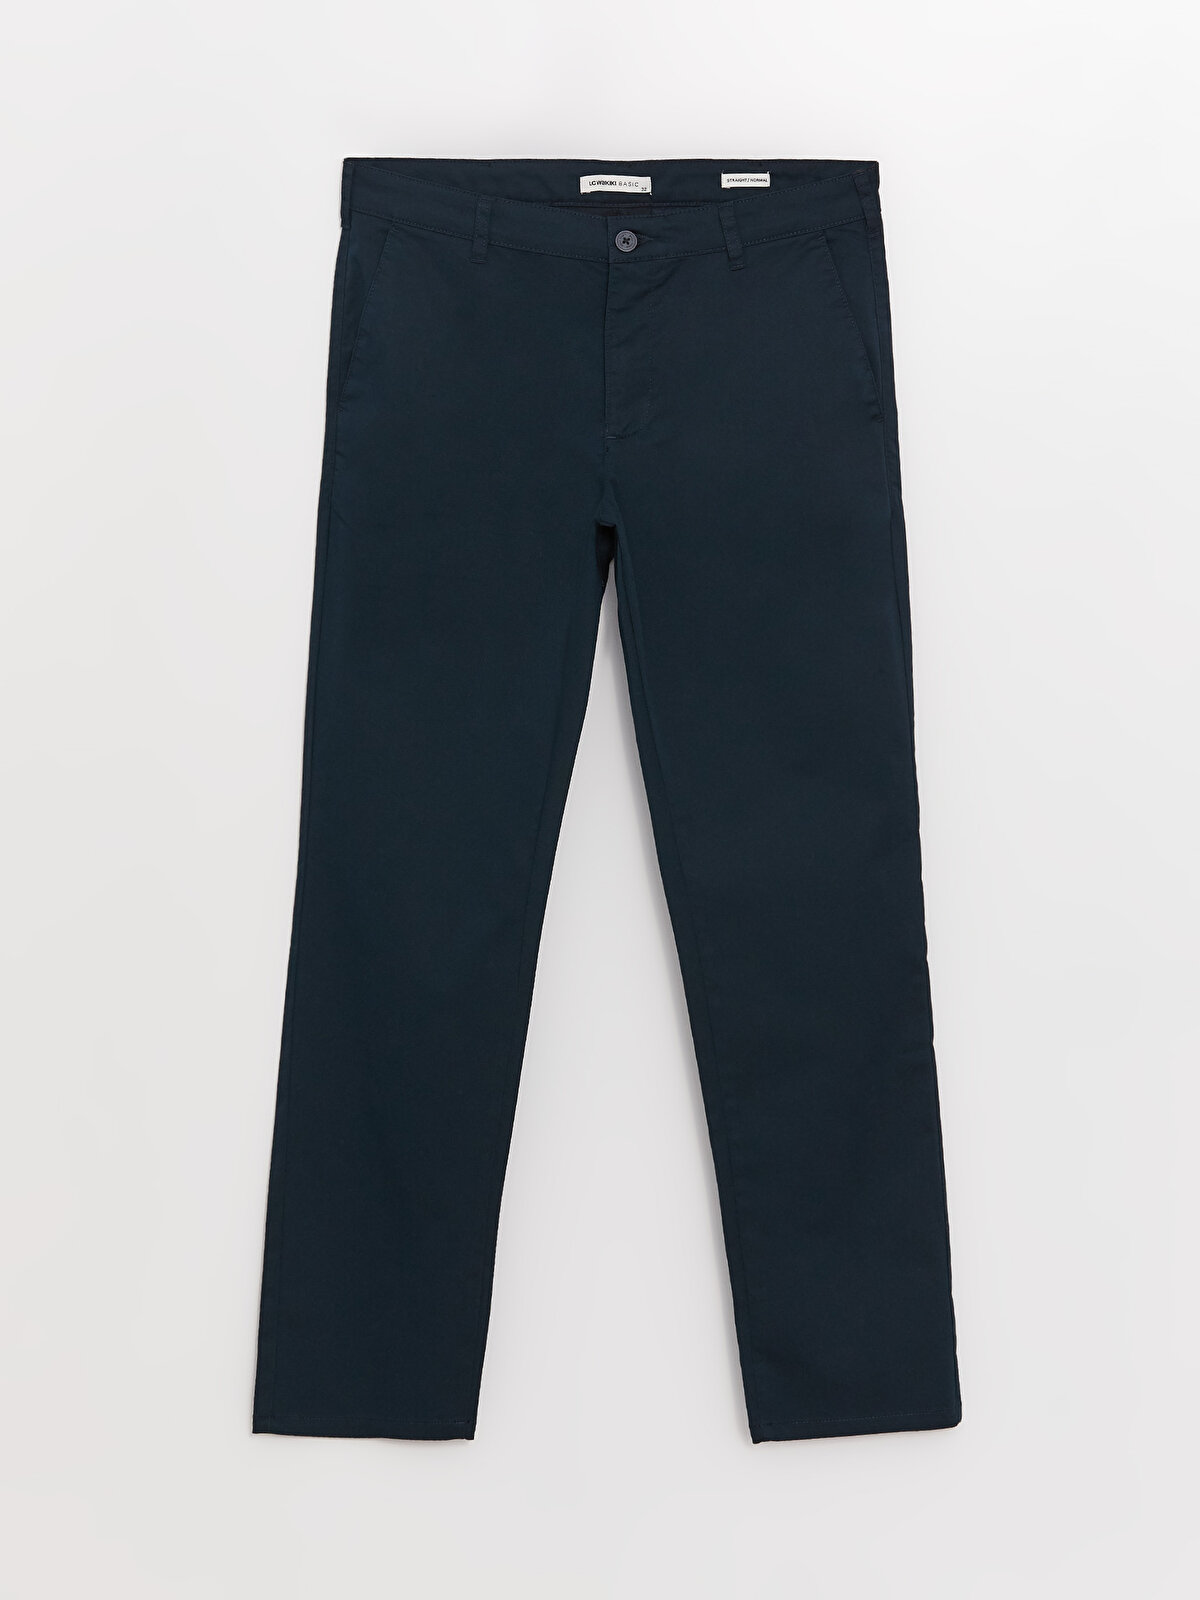 Standard Pattern Gabardine Men's Chino Trousers -S34343Z8-KN7 